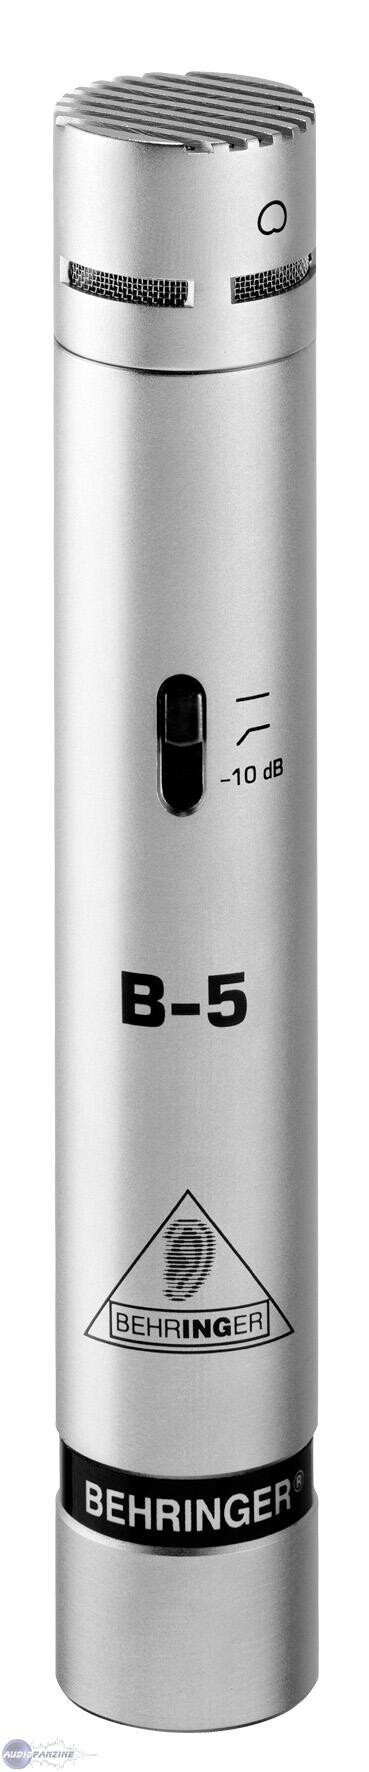 Nouveau micro : le Behringer B-5